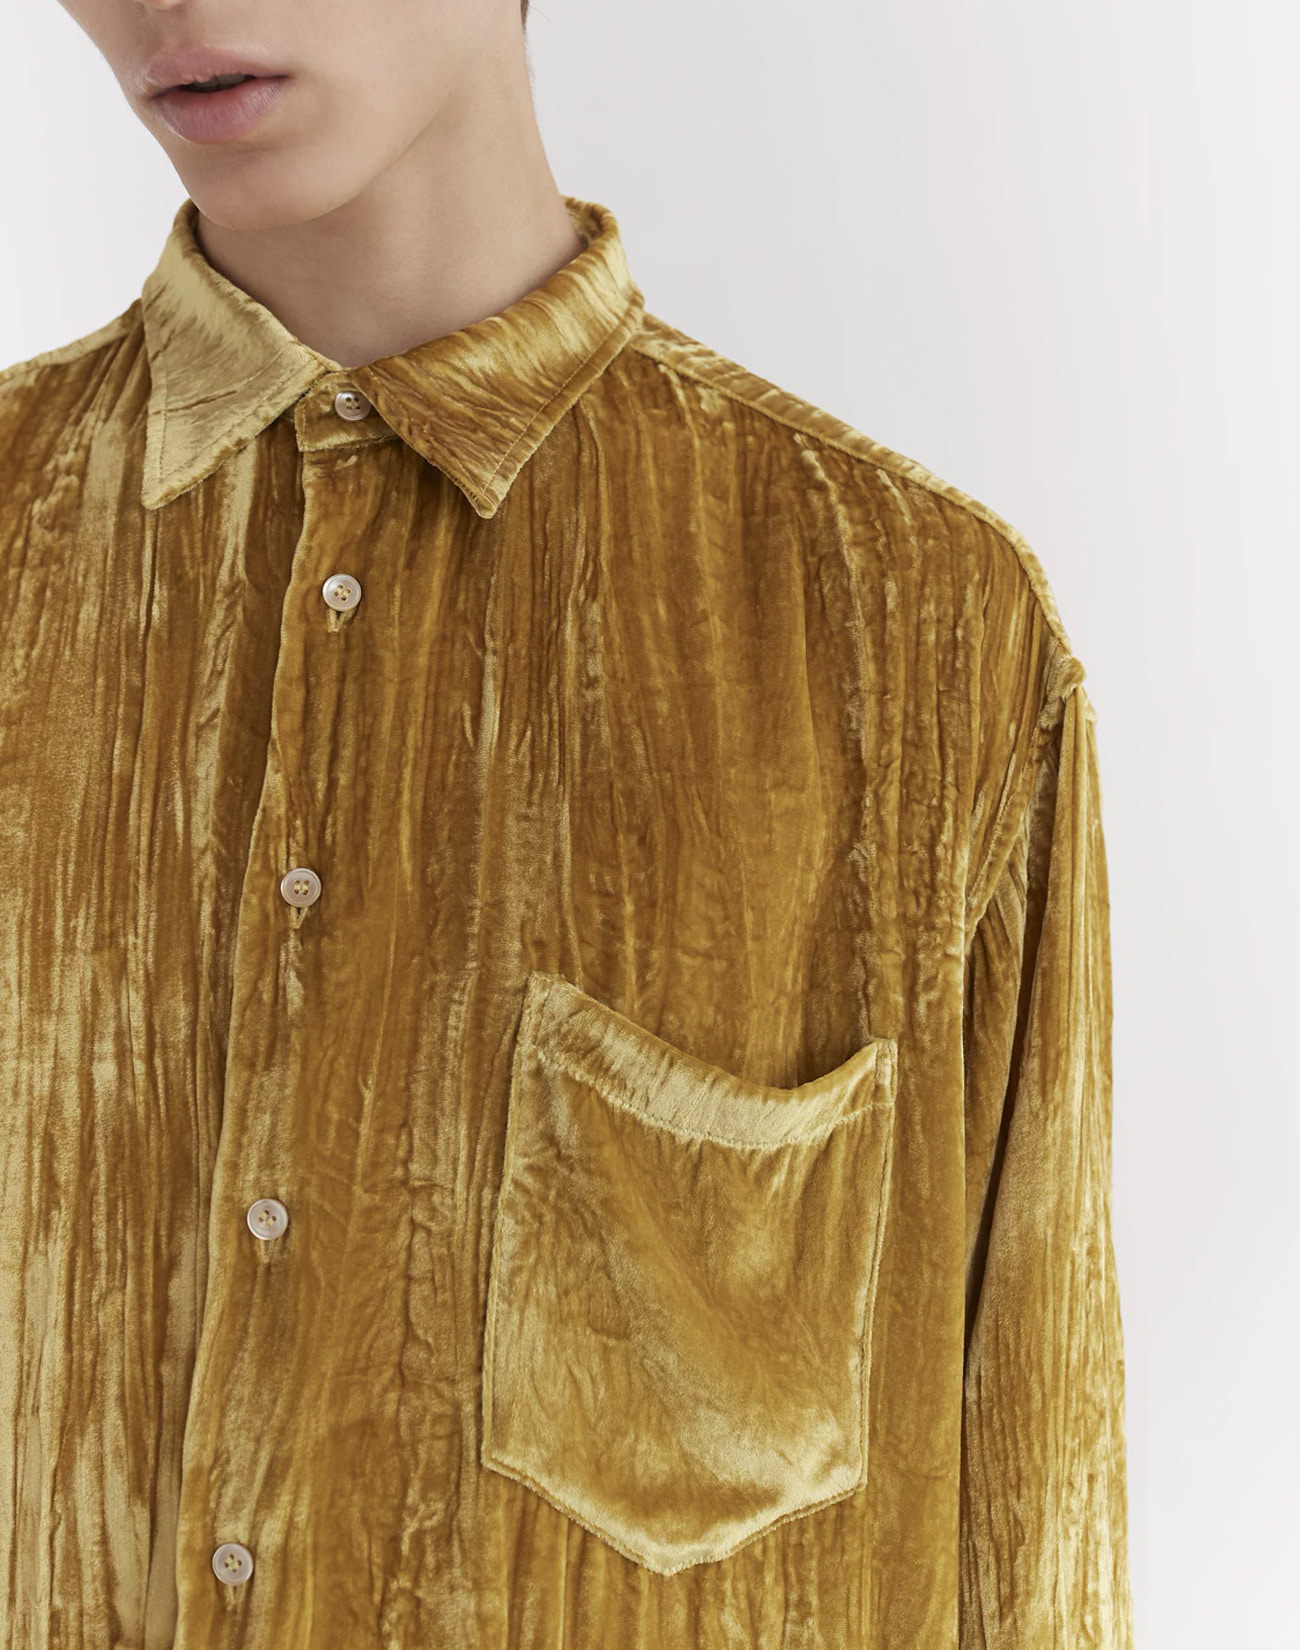 Gold velvet shirt